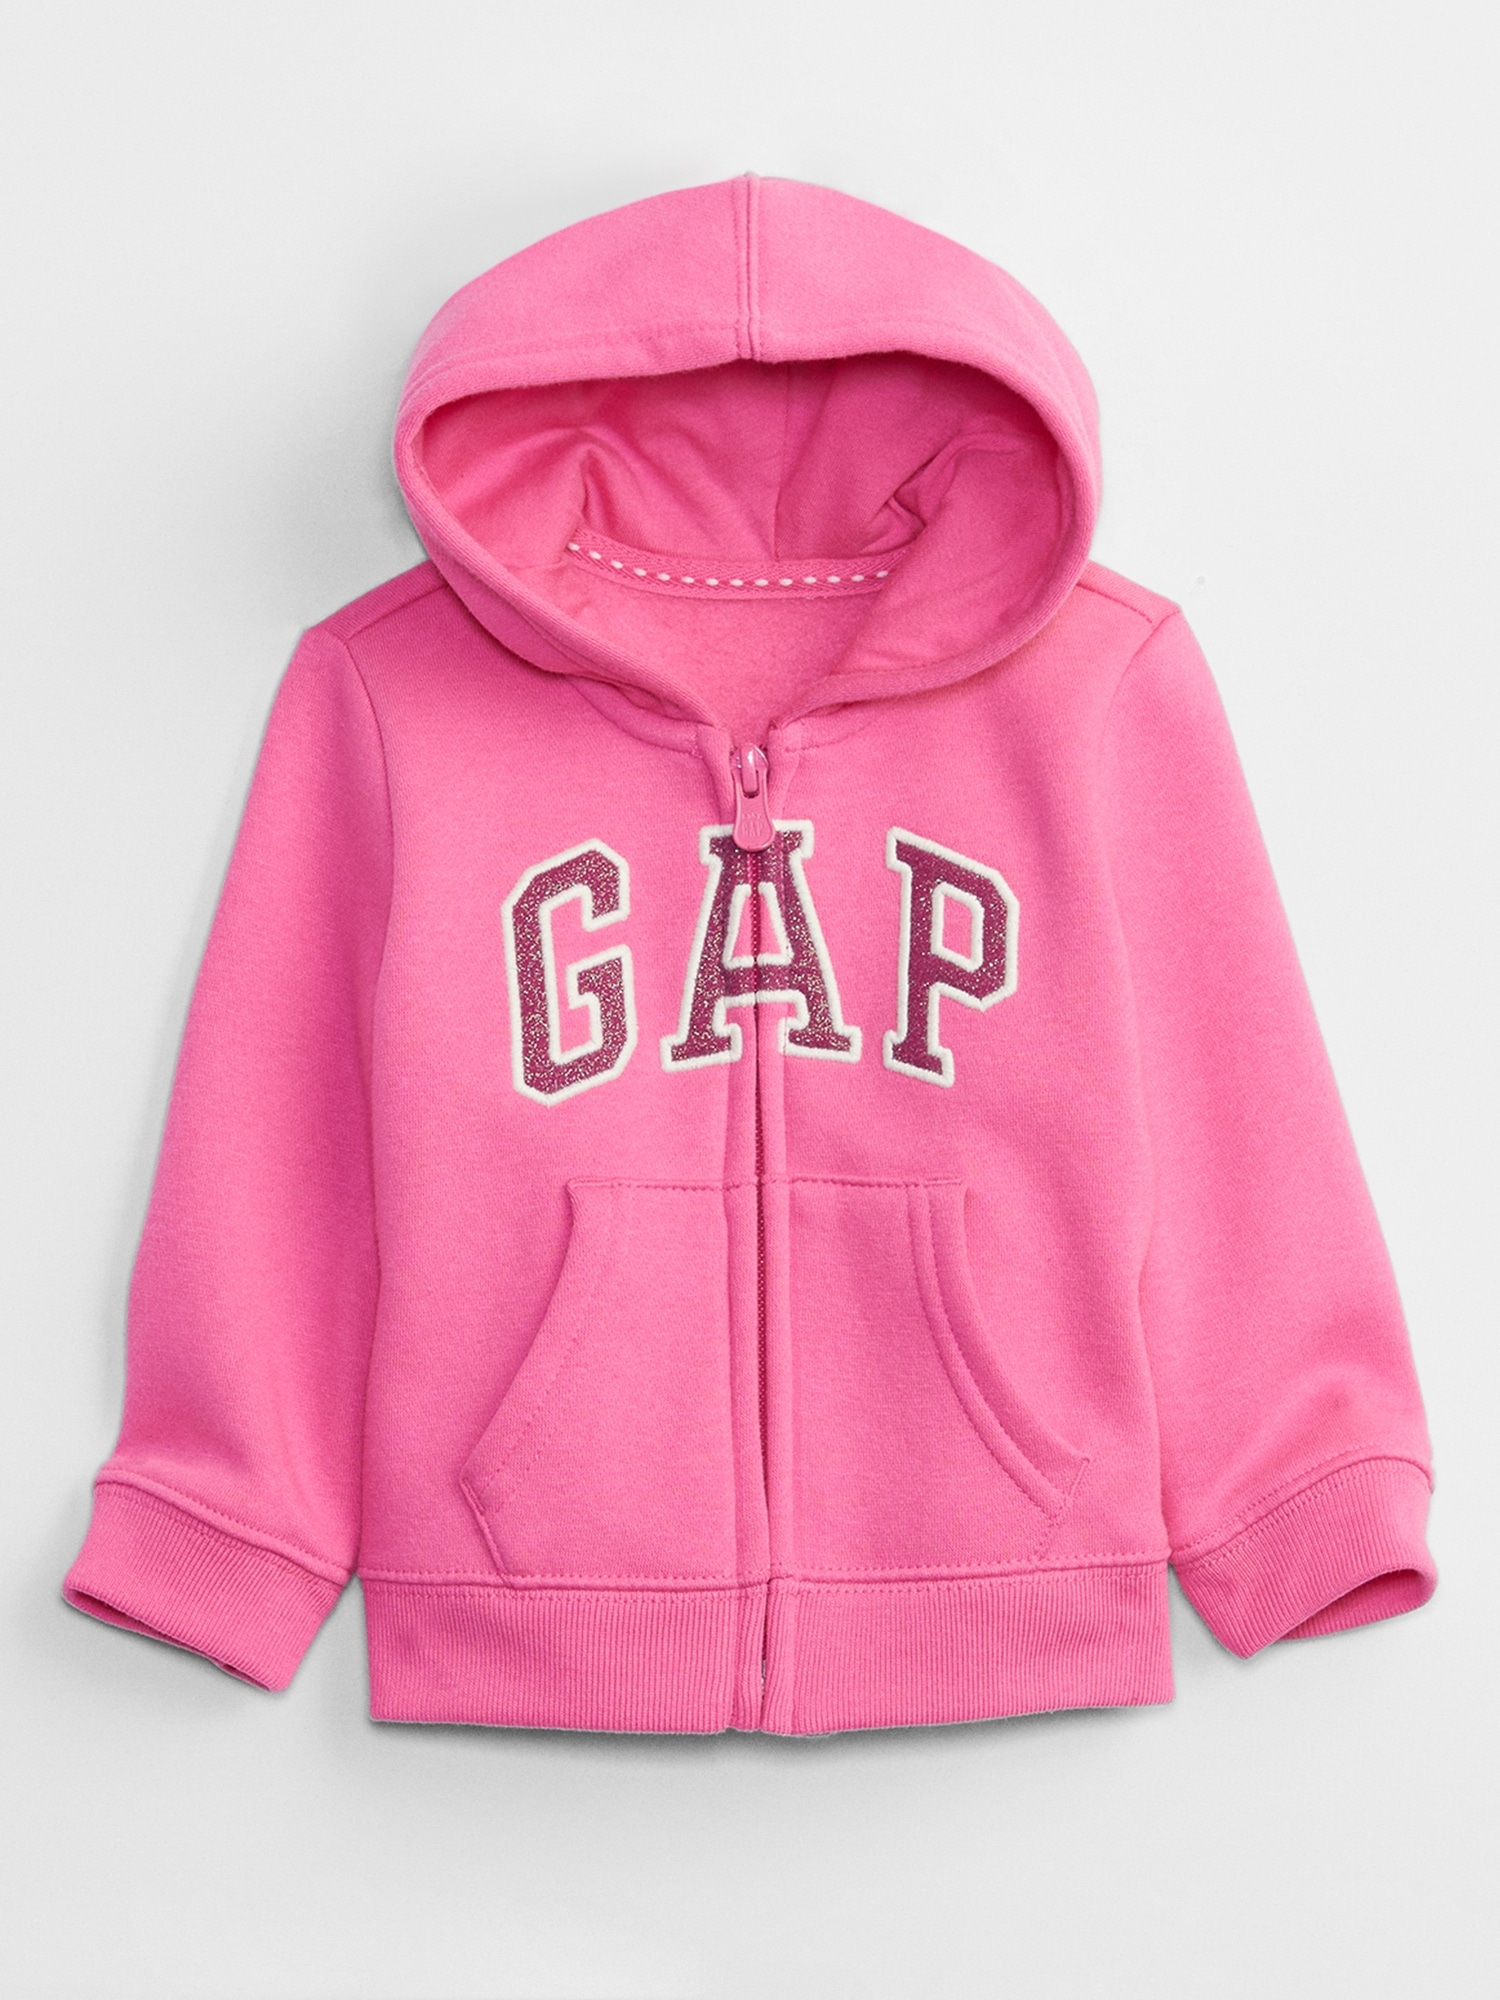 babyGap Logo Zip Hoodie | Gap Factory